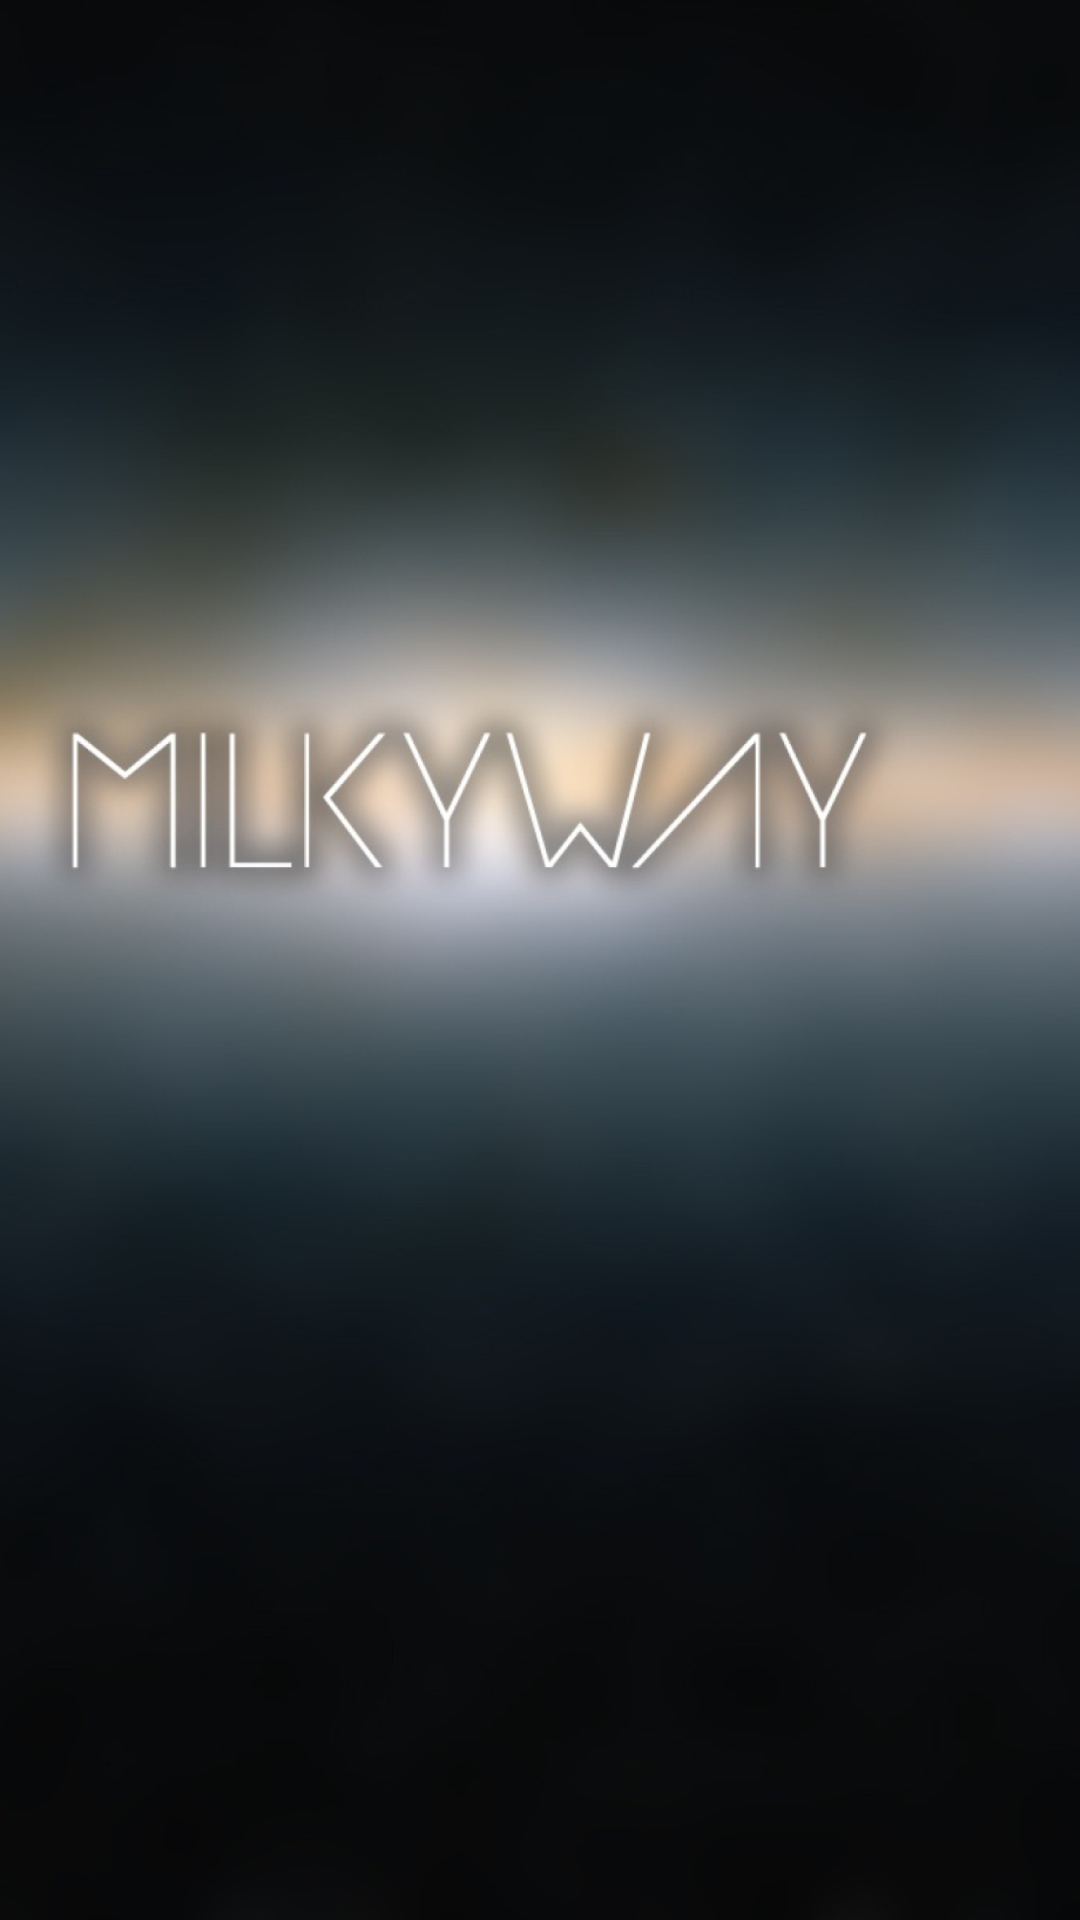 Milky Way wallpaper 1080x1920